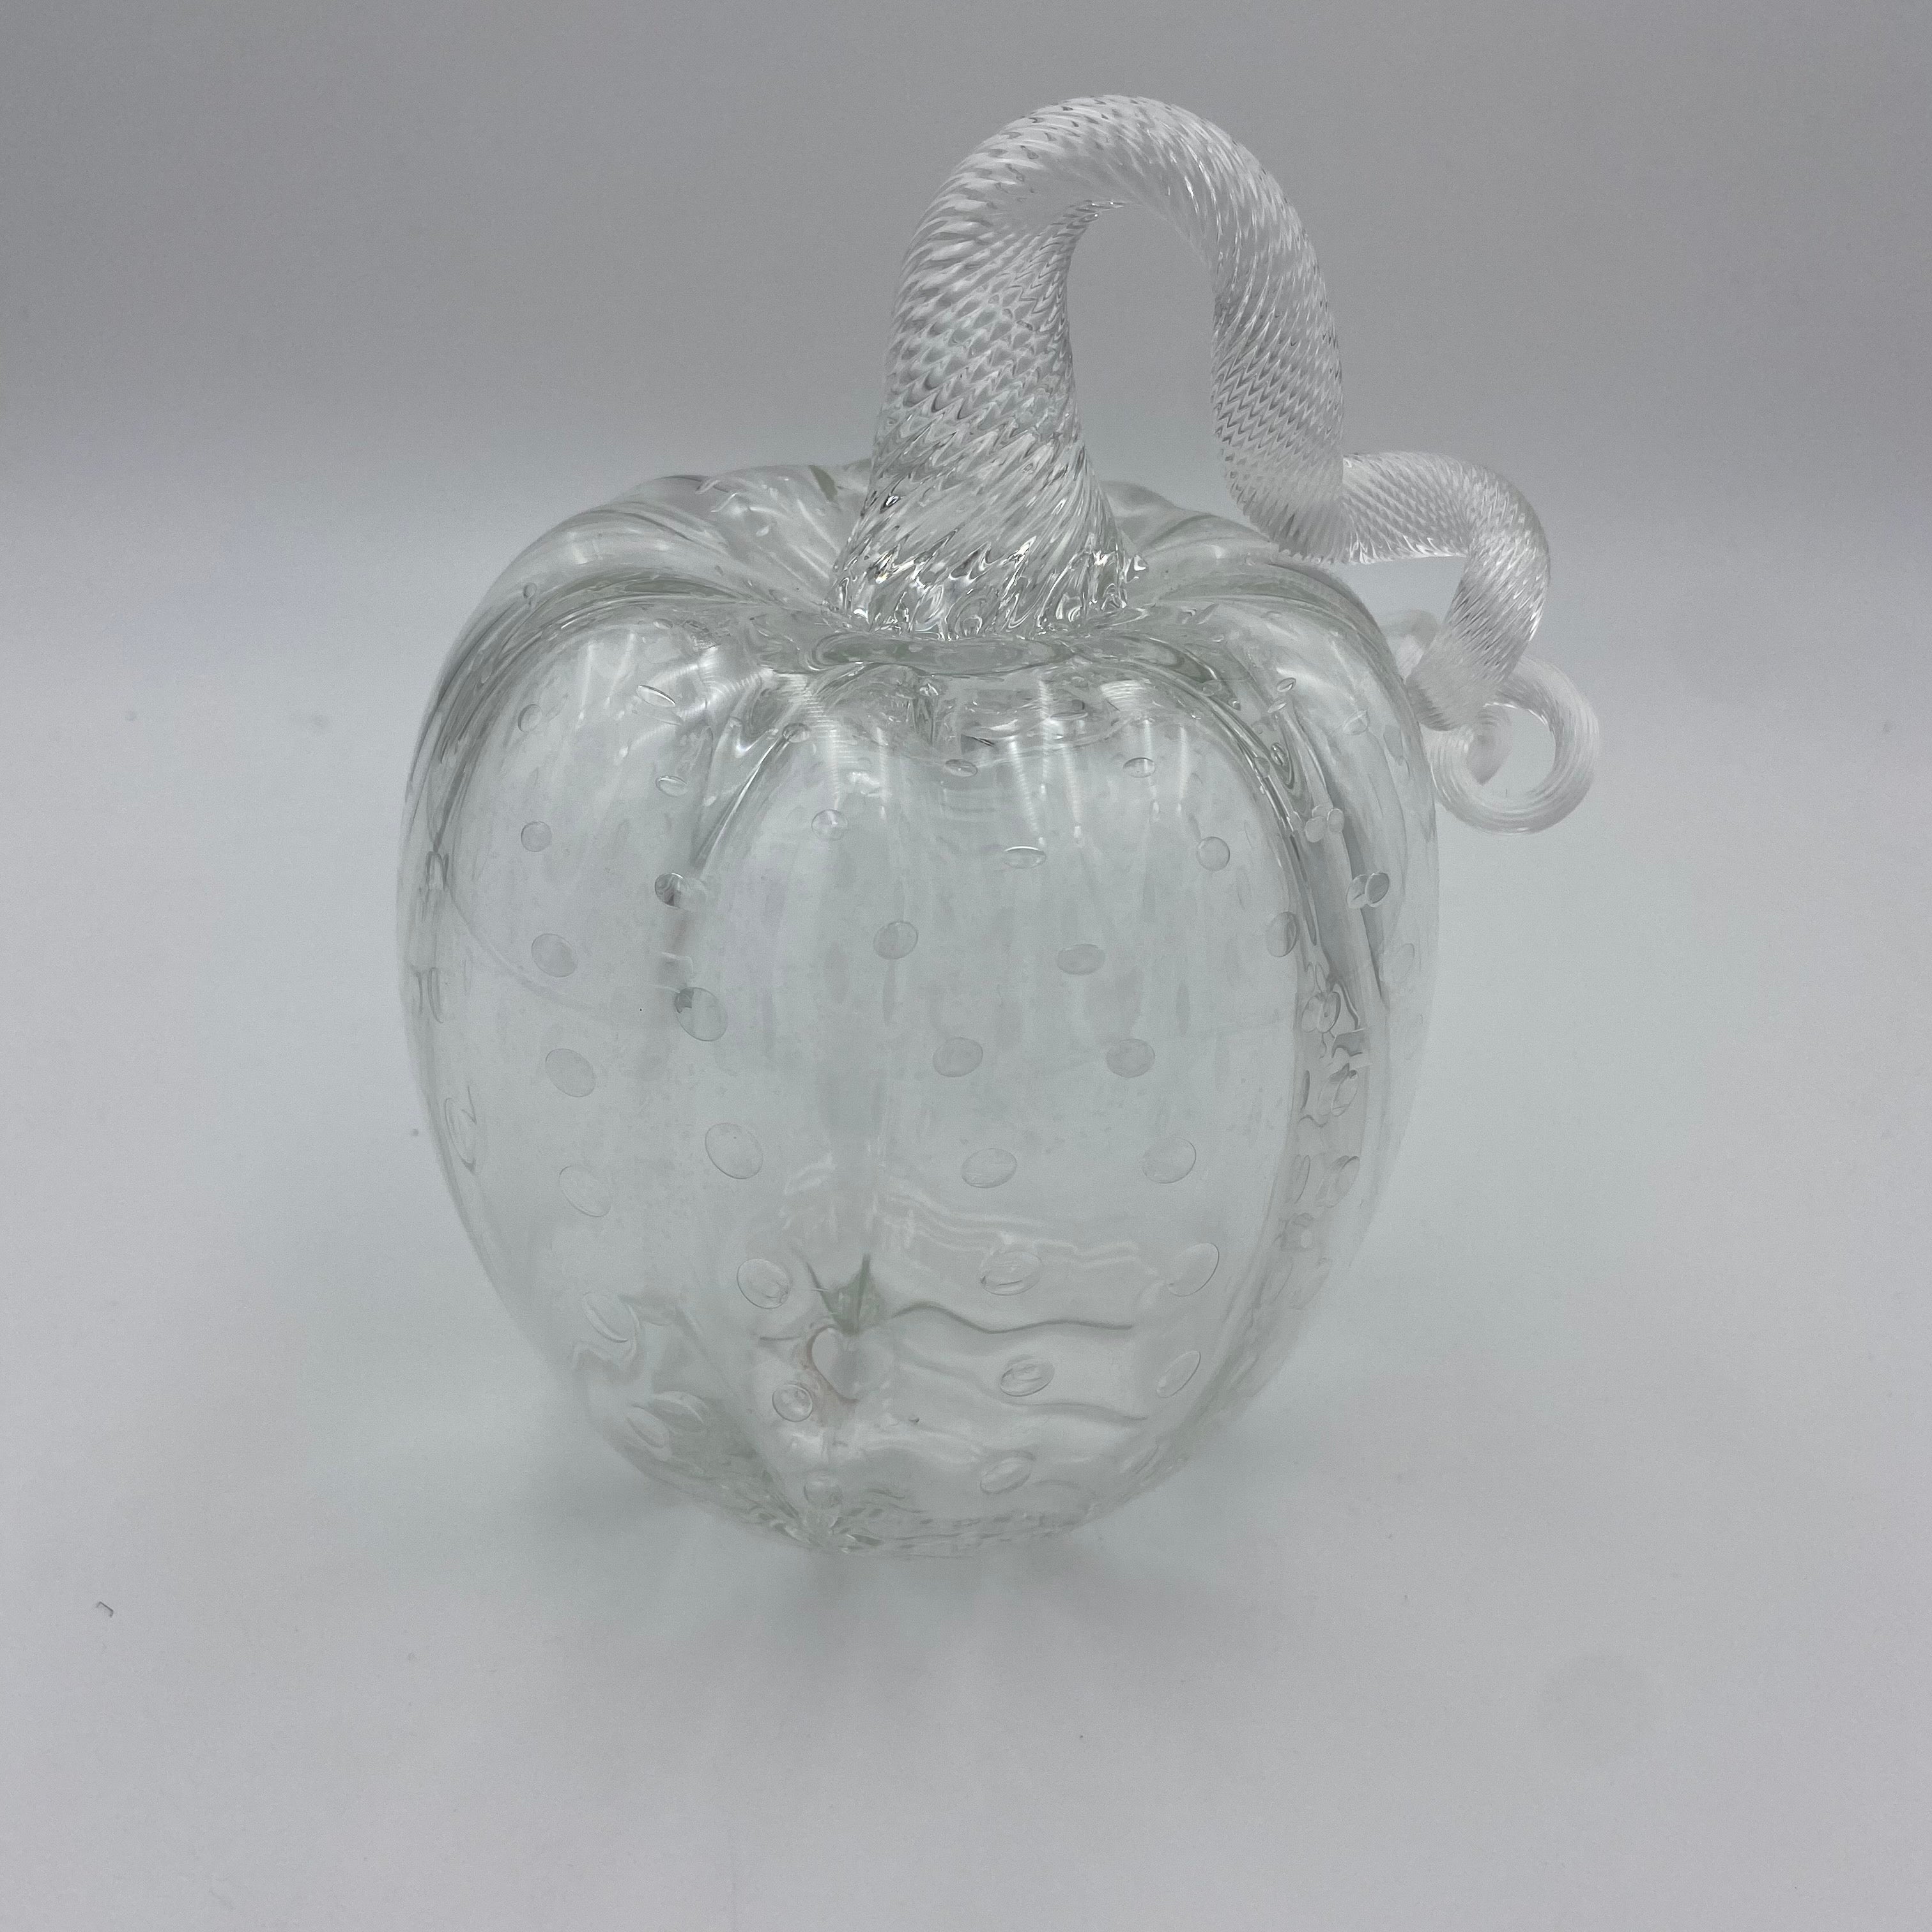 Hand Blown Glass Pumpkin Clear by Mcdermott Glass Studio